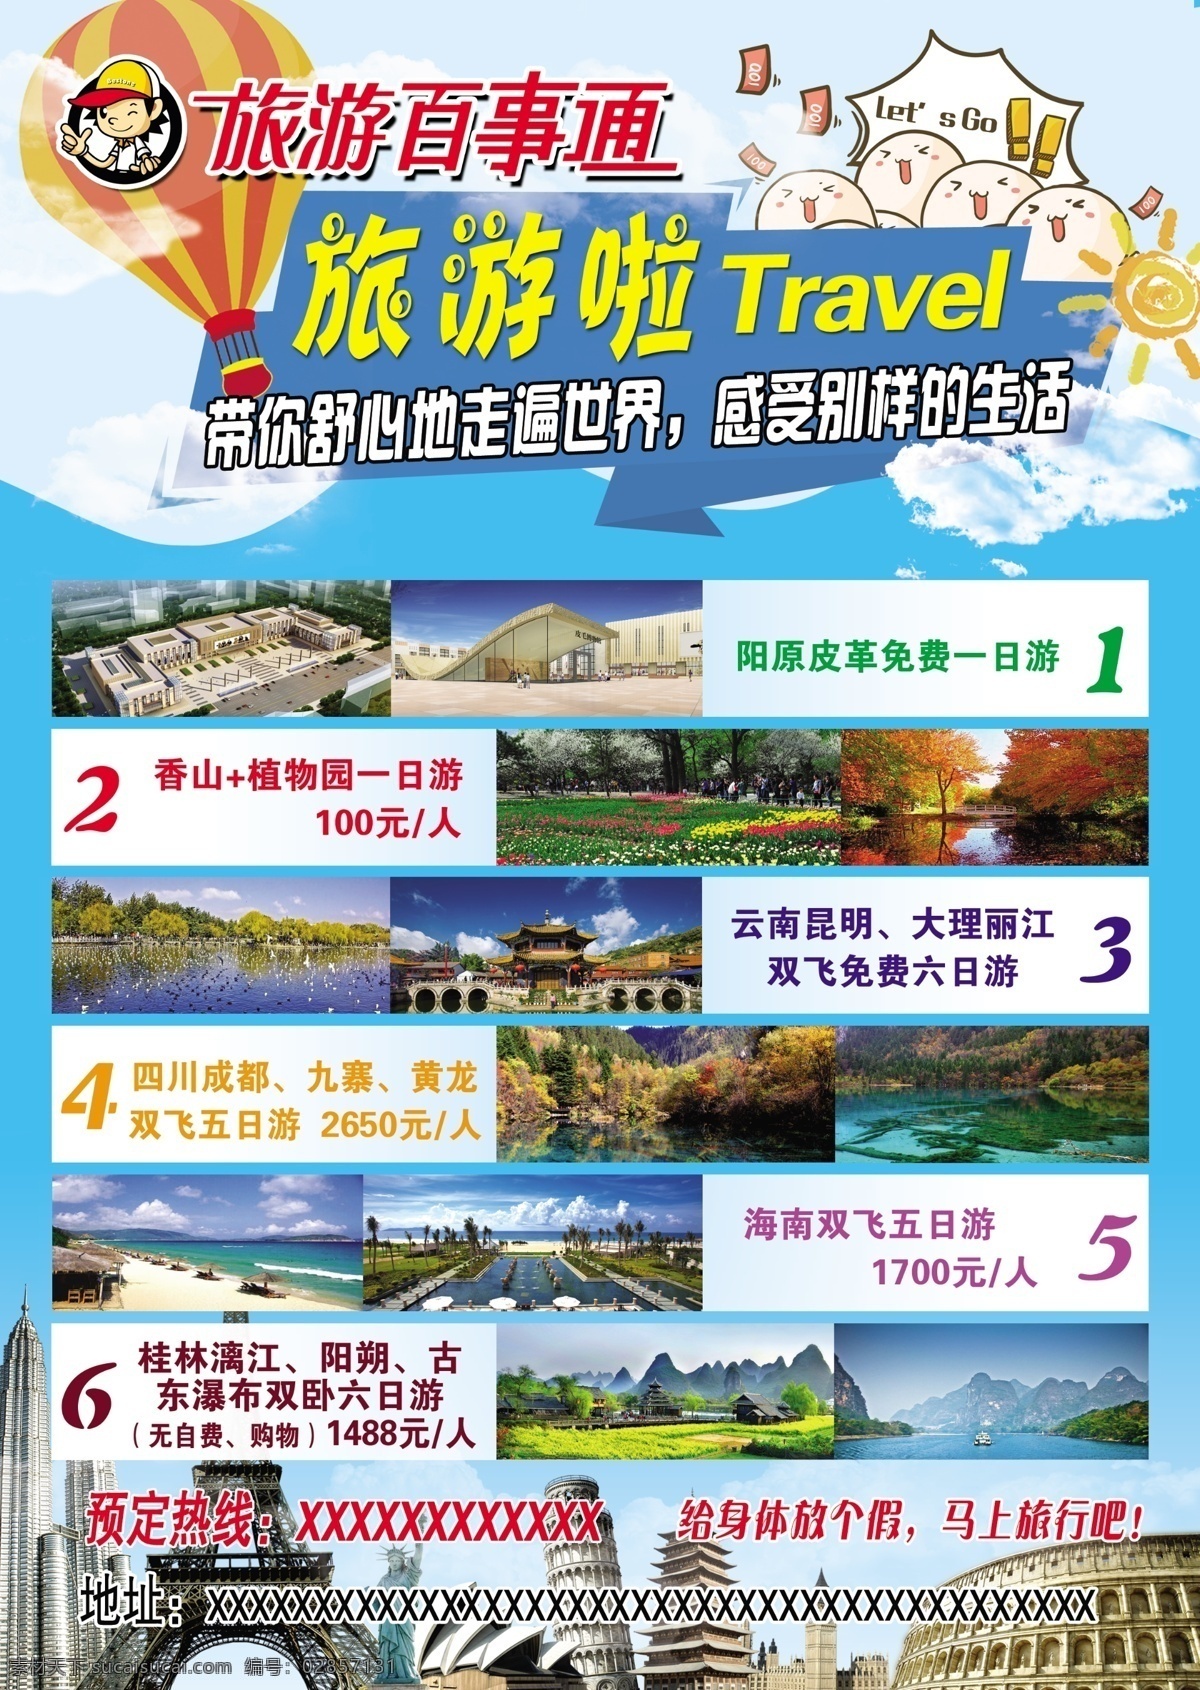 旅游活动彩页 宣传单 旅行社 dm单页